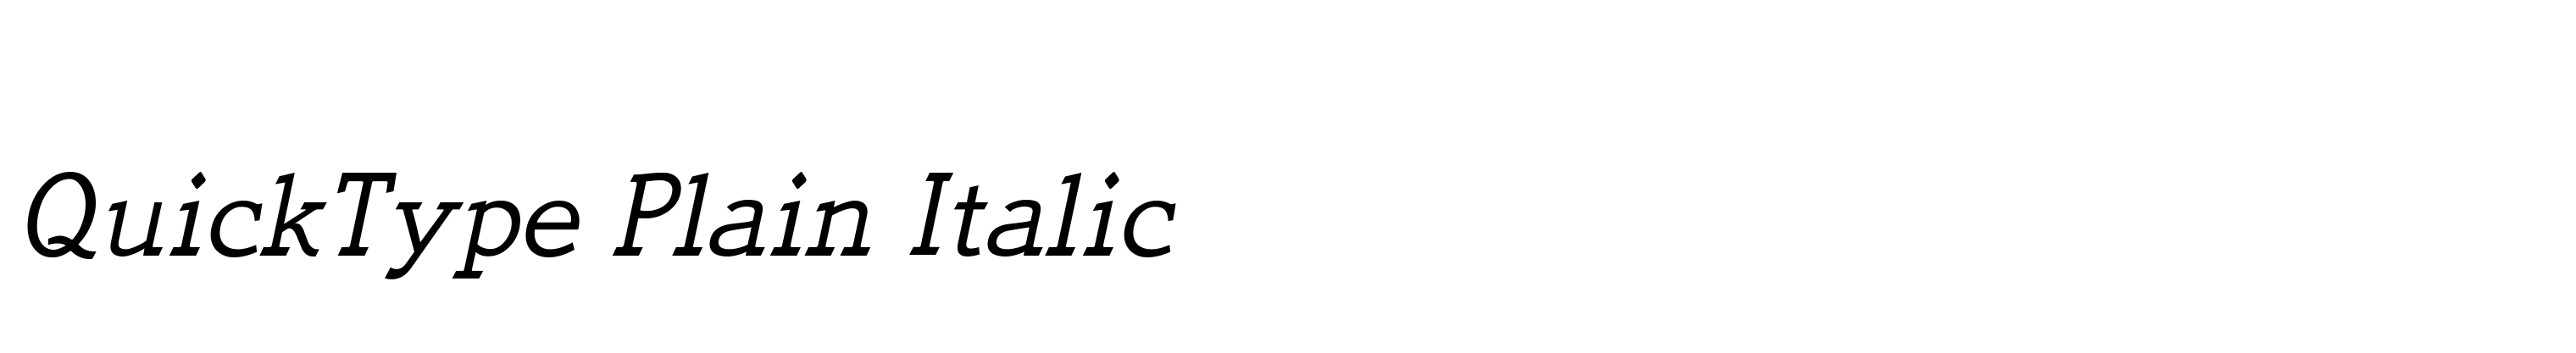 QuickType Plain Italic